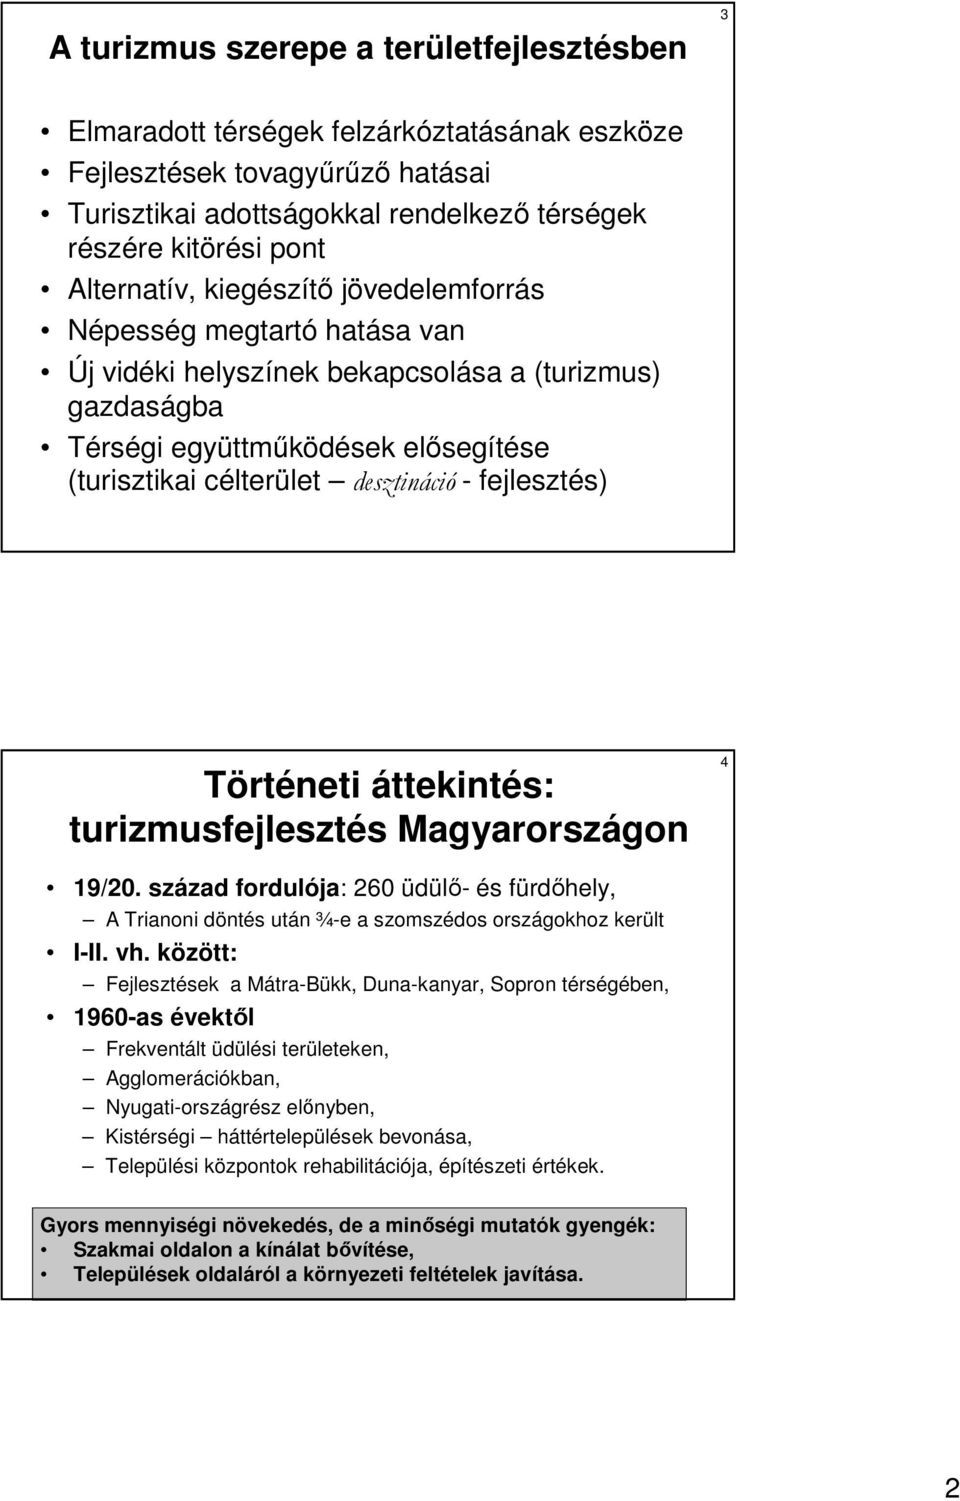 fejlesztés) Történeti áttekintés: turizmusfejlesztés Magyarországon 4 19/20. század fordulója: 260 üdülı- és fürdıhely, A Trianoni döntés után ¾-e a szomszédos országokhoz került I-II. vh.